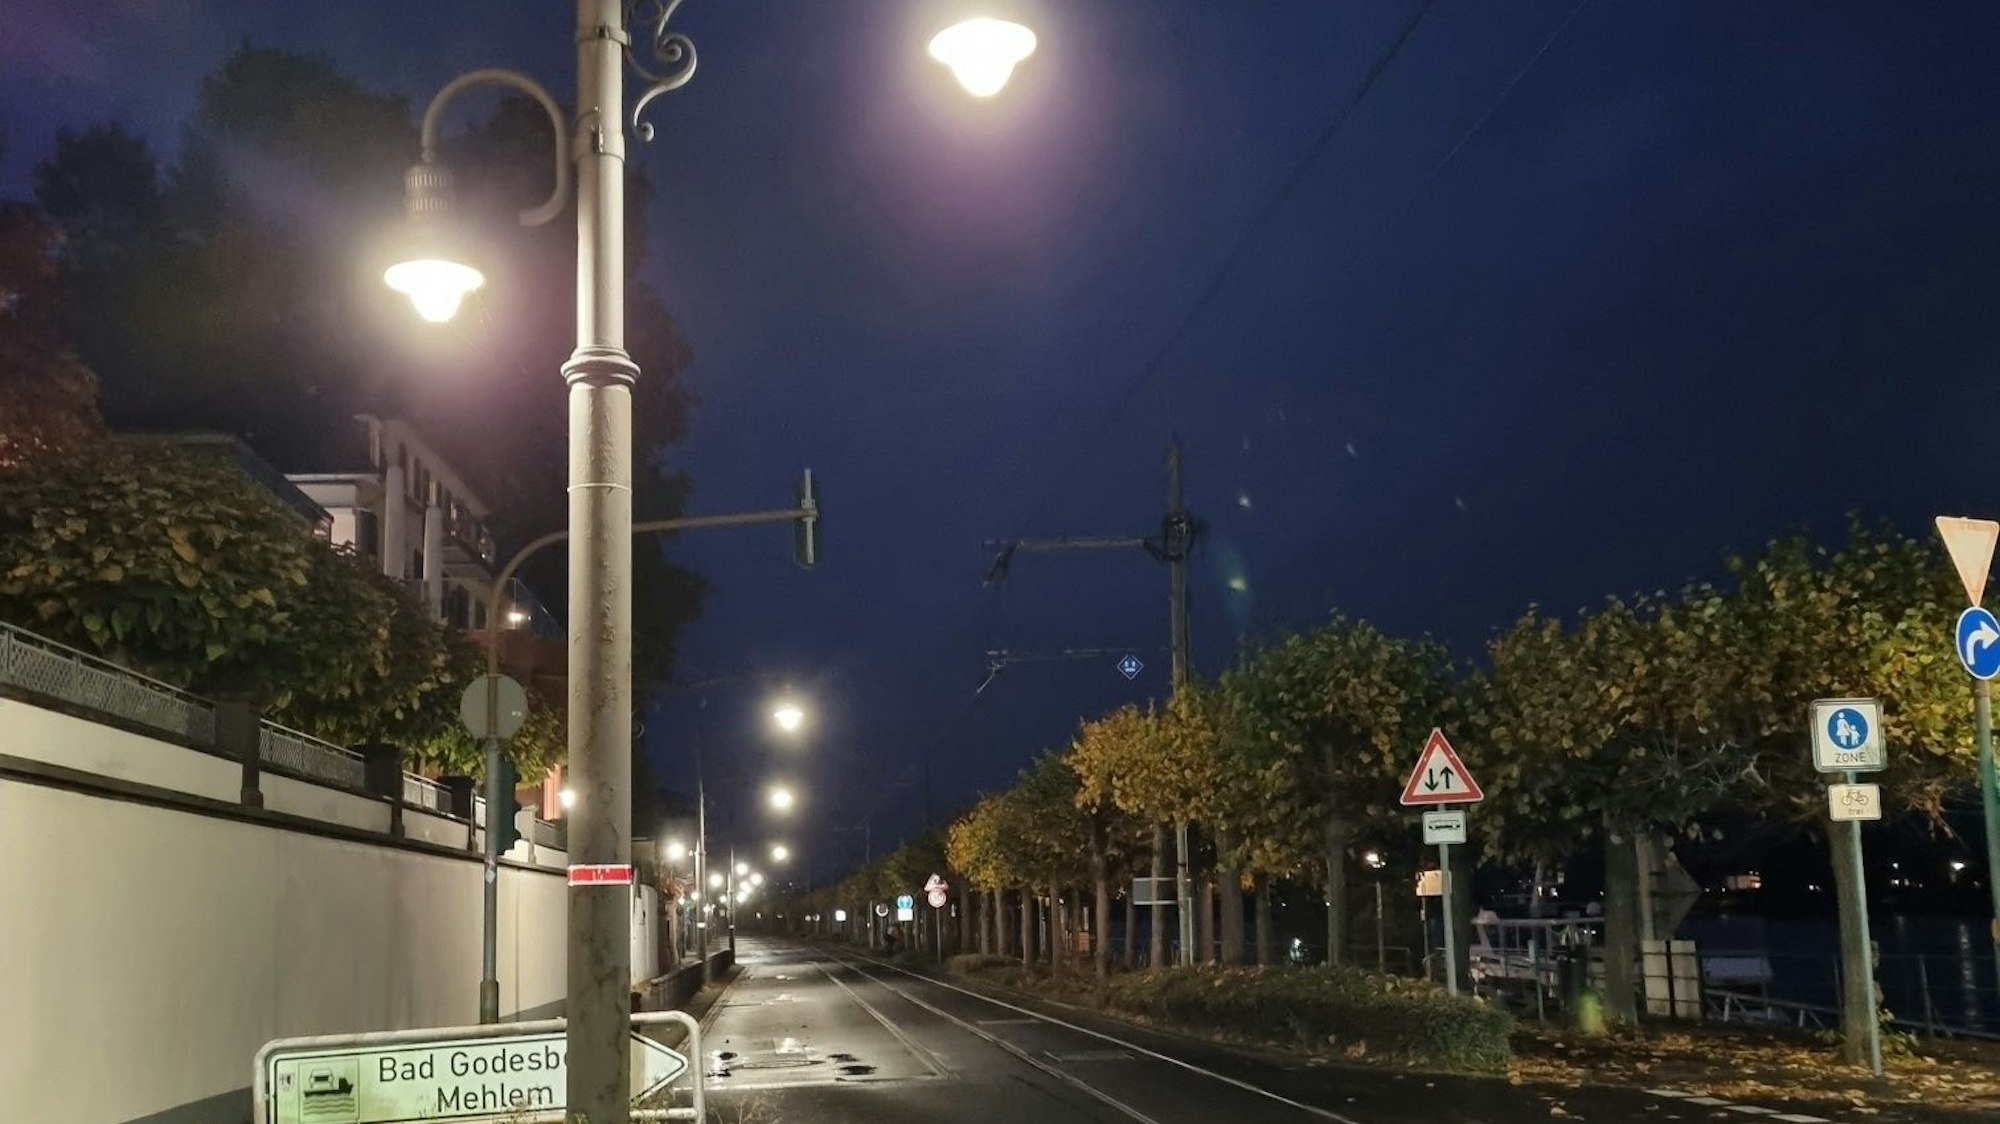 Eine Straßenlaterne in der Altstadt ist mit einem roten „Laternenring“ markiert, das Zeichen besagt, dass die Leuchte nachts nicht durchgehend in Betrieb ist.